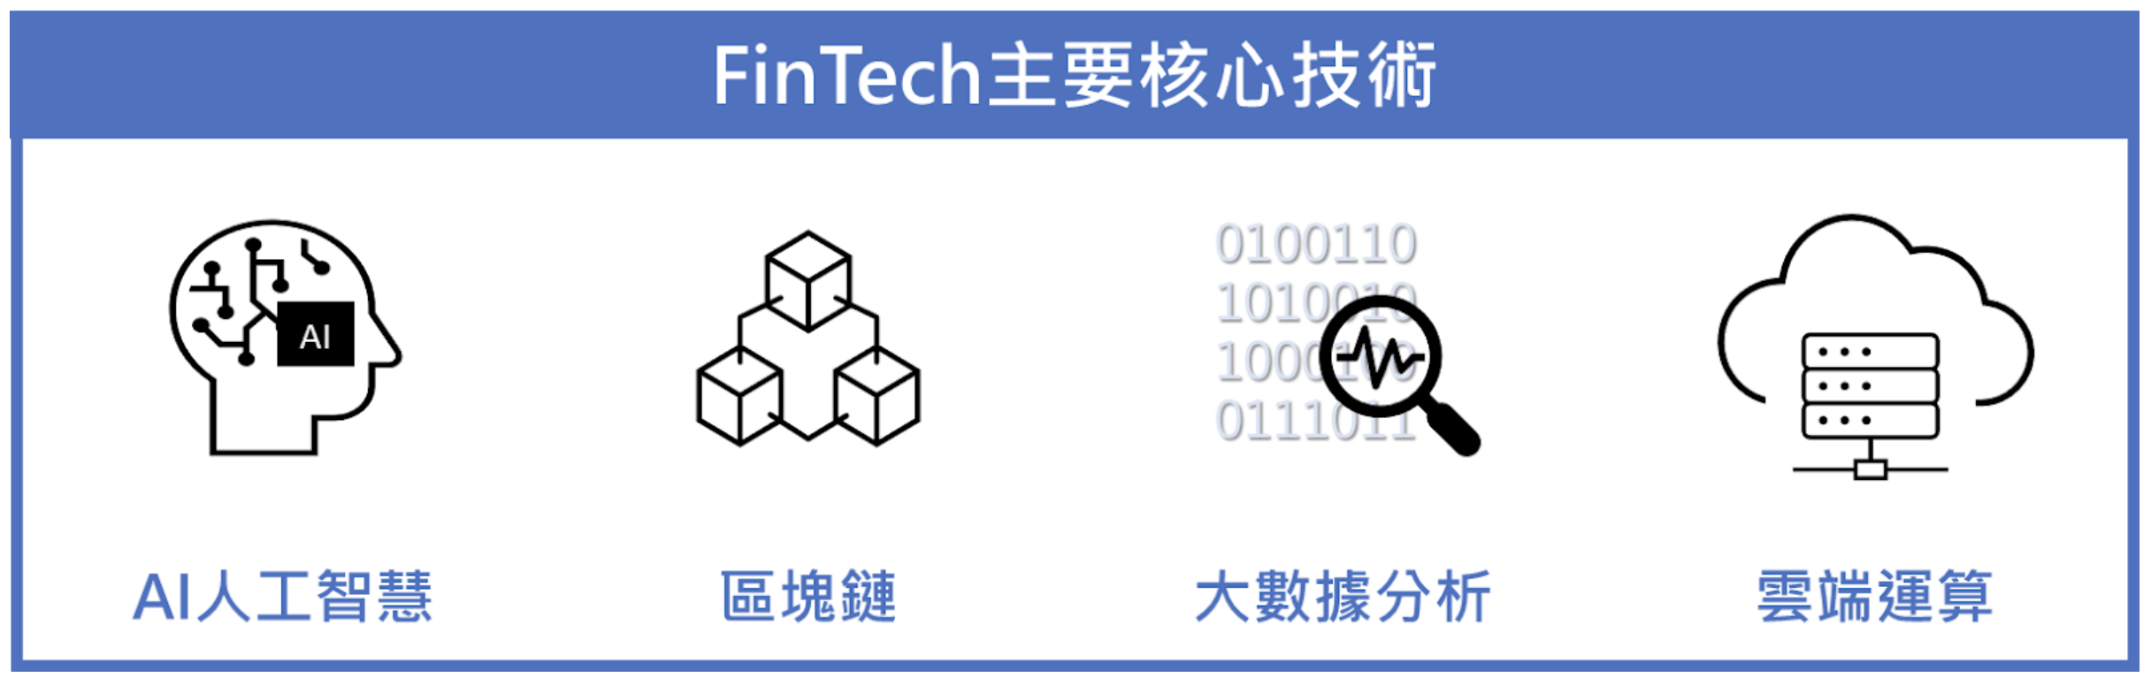 FinTech 是什麼- FinTech主要核心技術